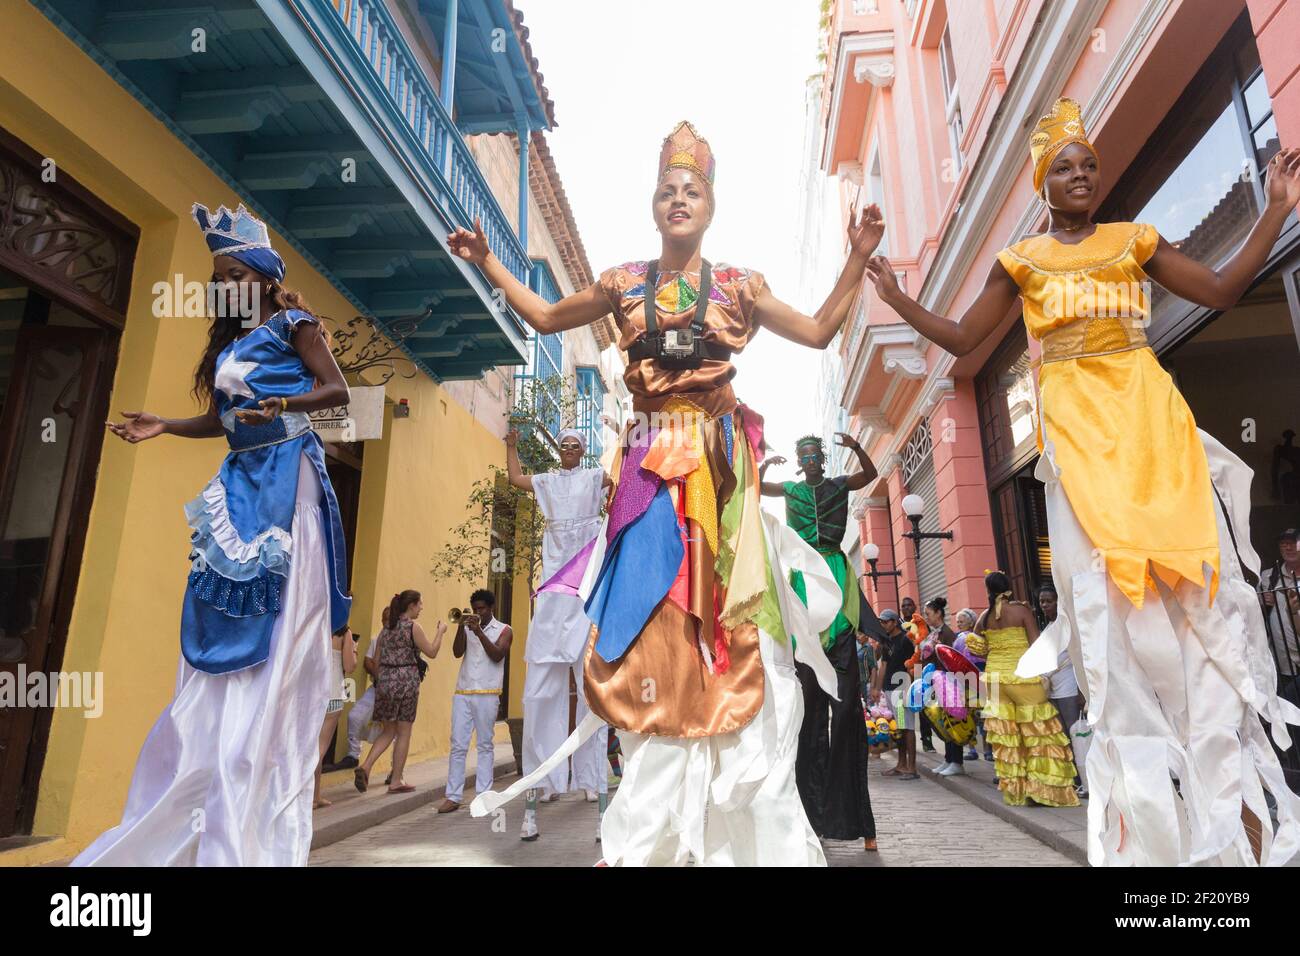 Cuba, Havana - Street entertainers on stilts perform in Havana Stock Photo